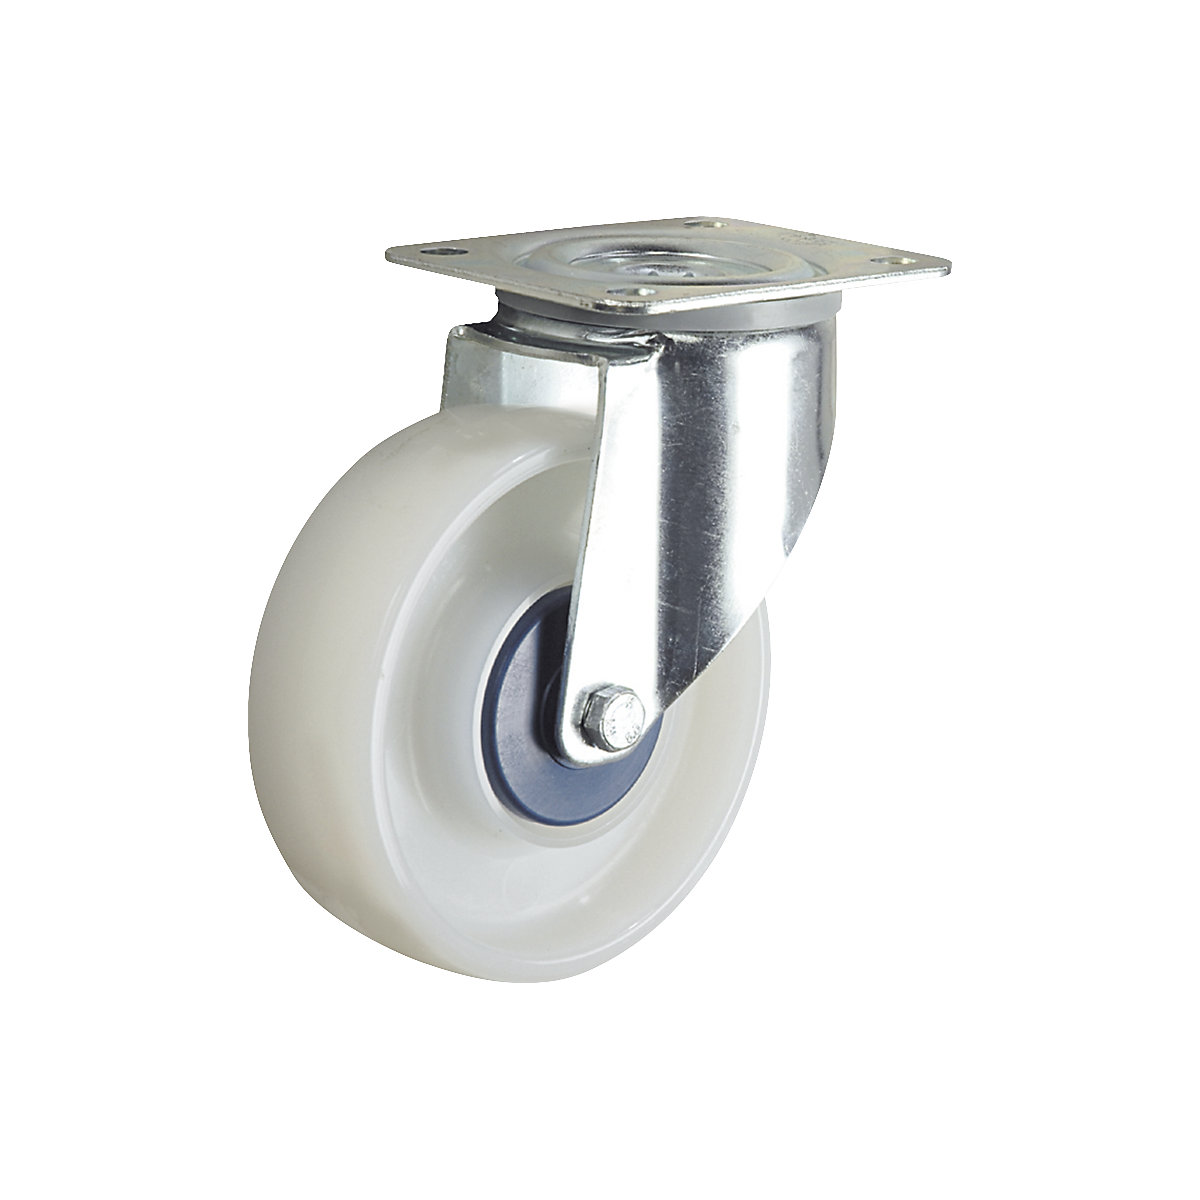 Polyamidové obruč, biele – TENTE, Ø x šírka kolesa 125 x 40 mm, otočné koliesko-3